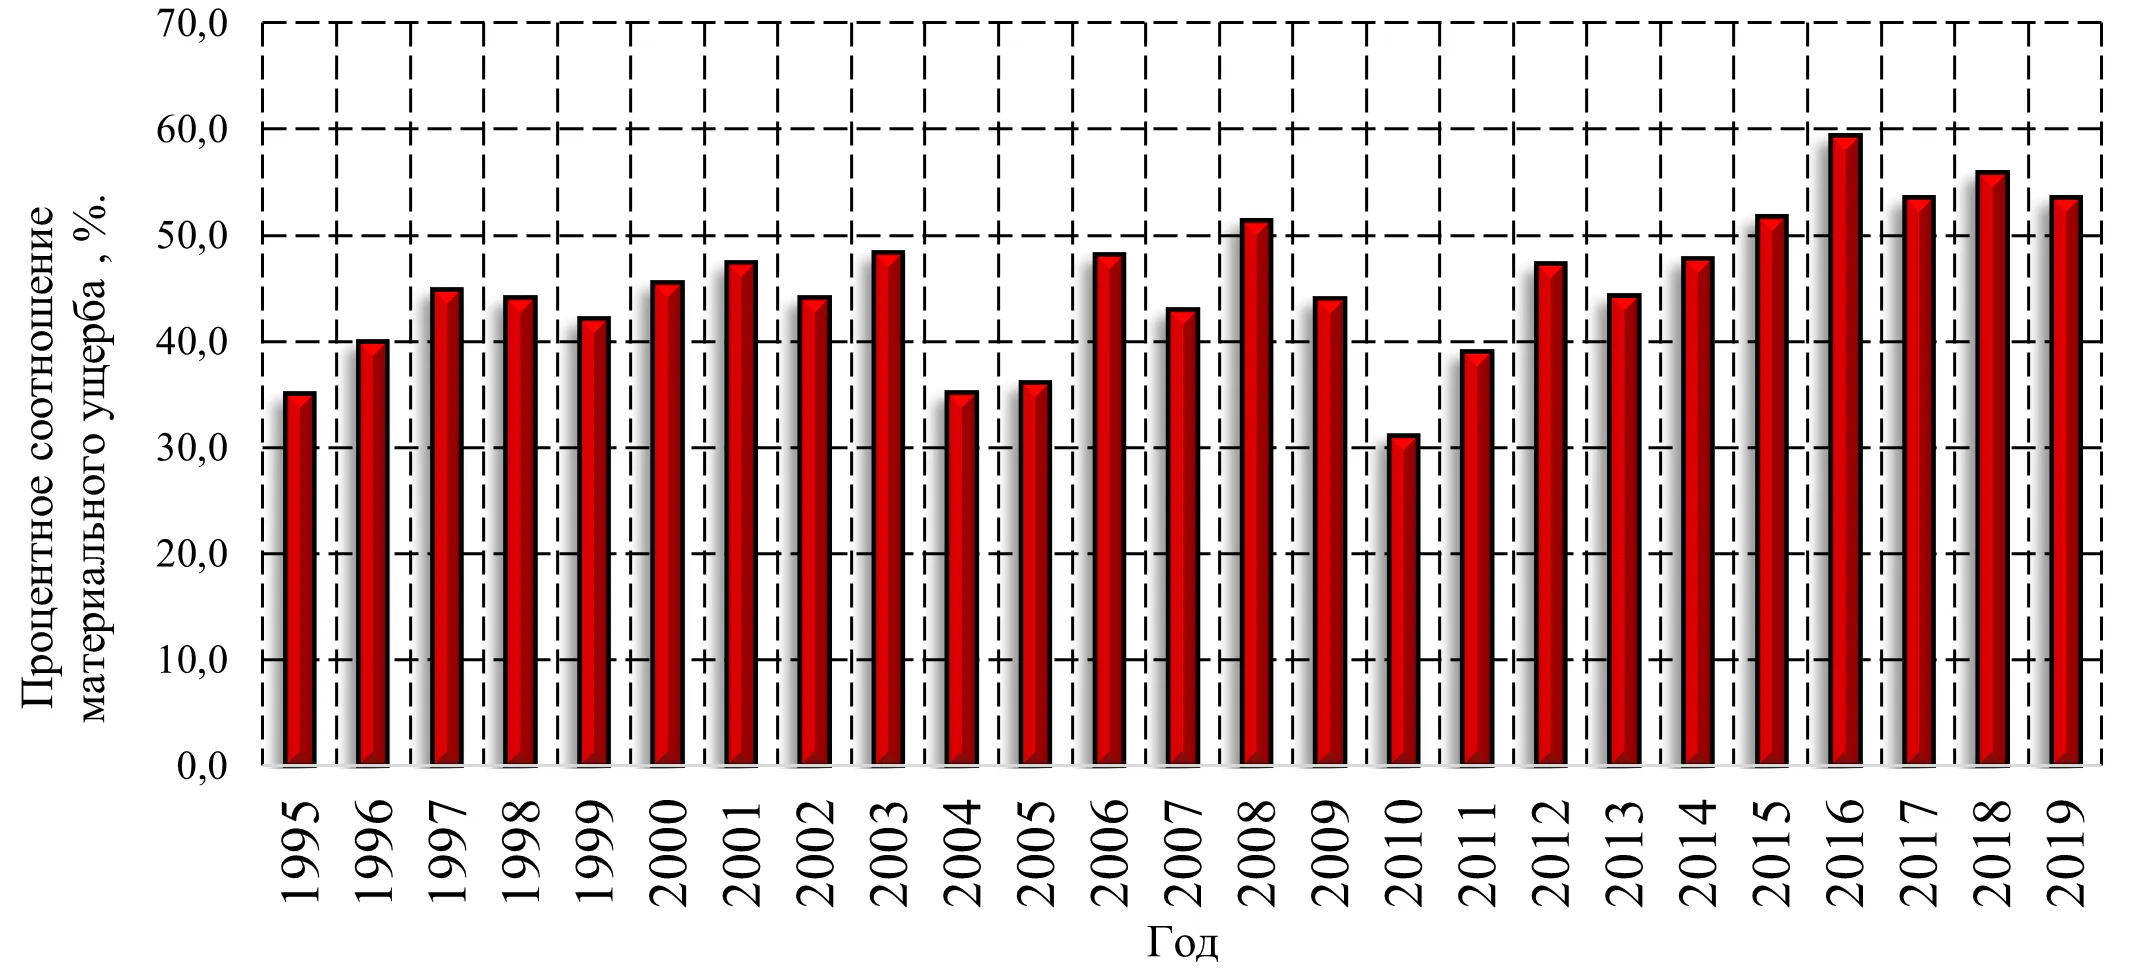 Гистограмма распределения процентного соотношения прямого материального ущерба по причине нарушения правил пожарной безопасности от общего прямого материального ущерба от пожаров в Российской Федерации с 1995 по 2019 года